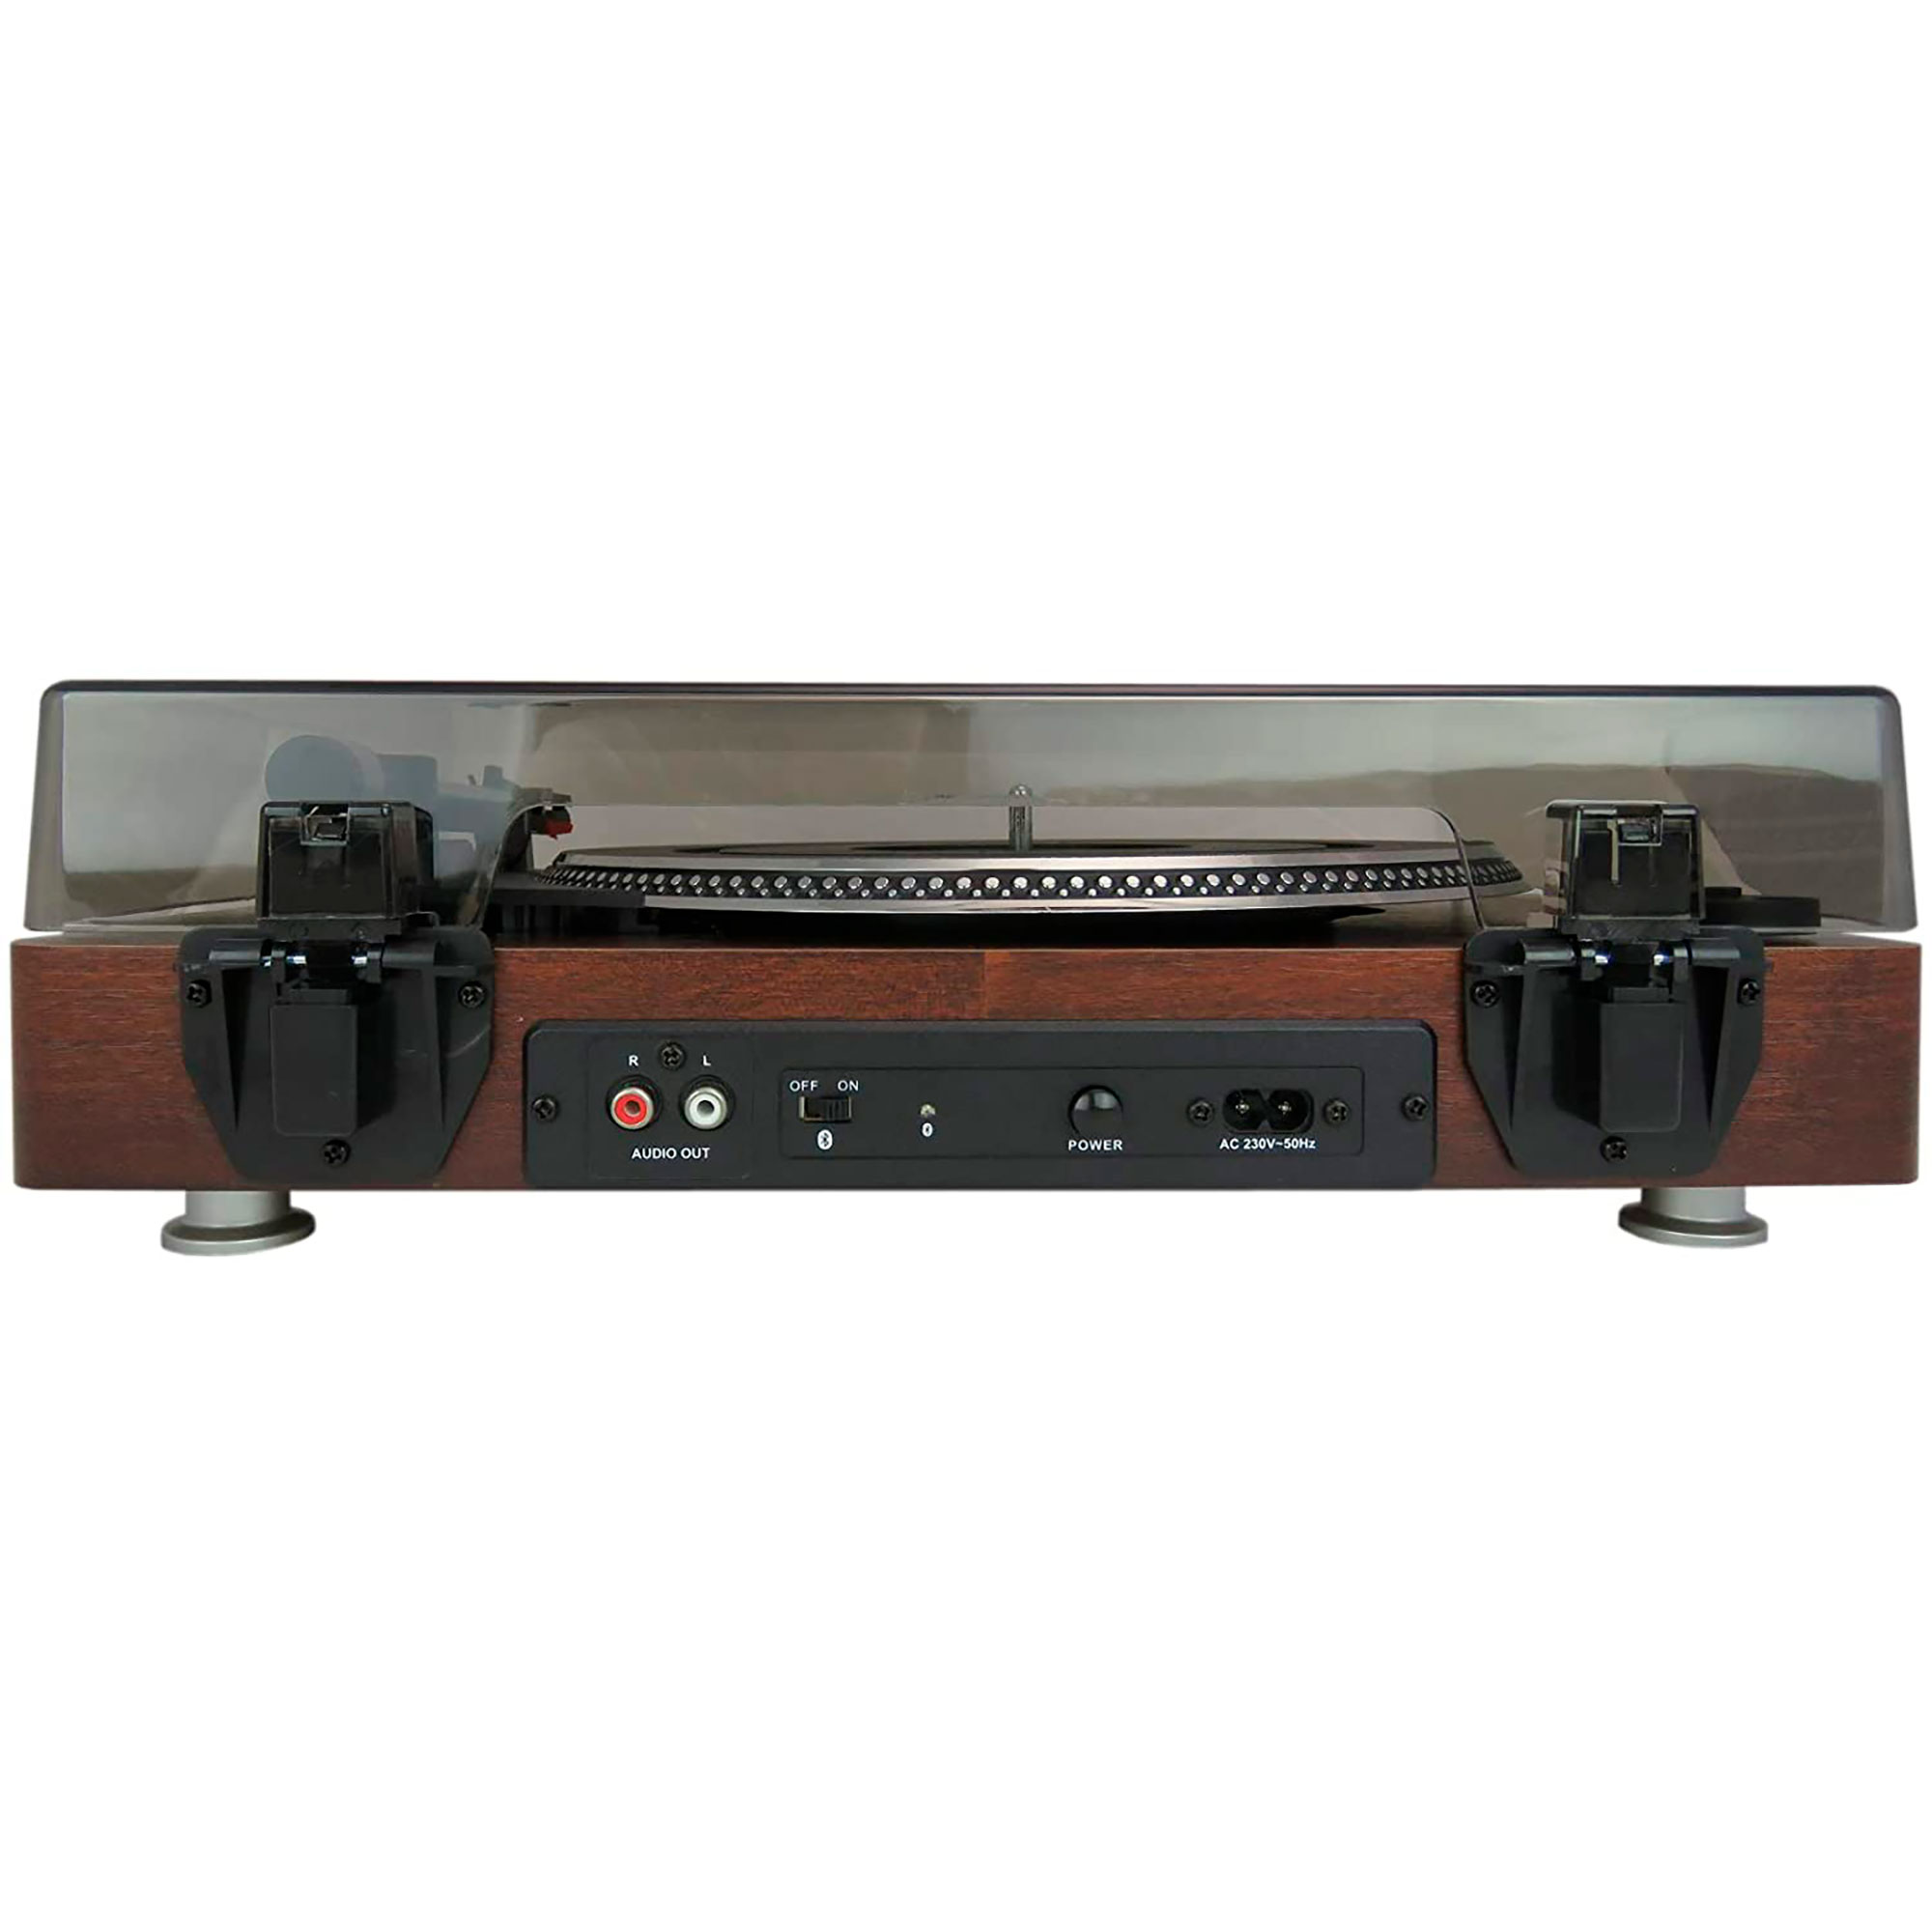 ROADSTAR Retro TT385BTT Vintage Holz Vinyl-Plattenspieler